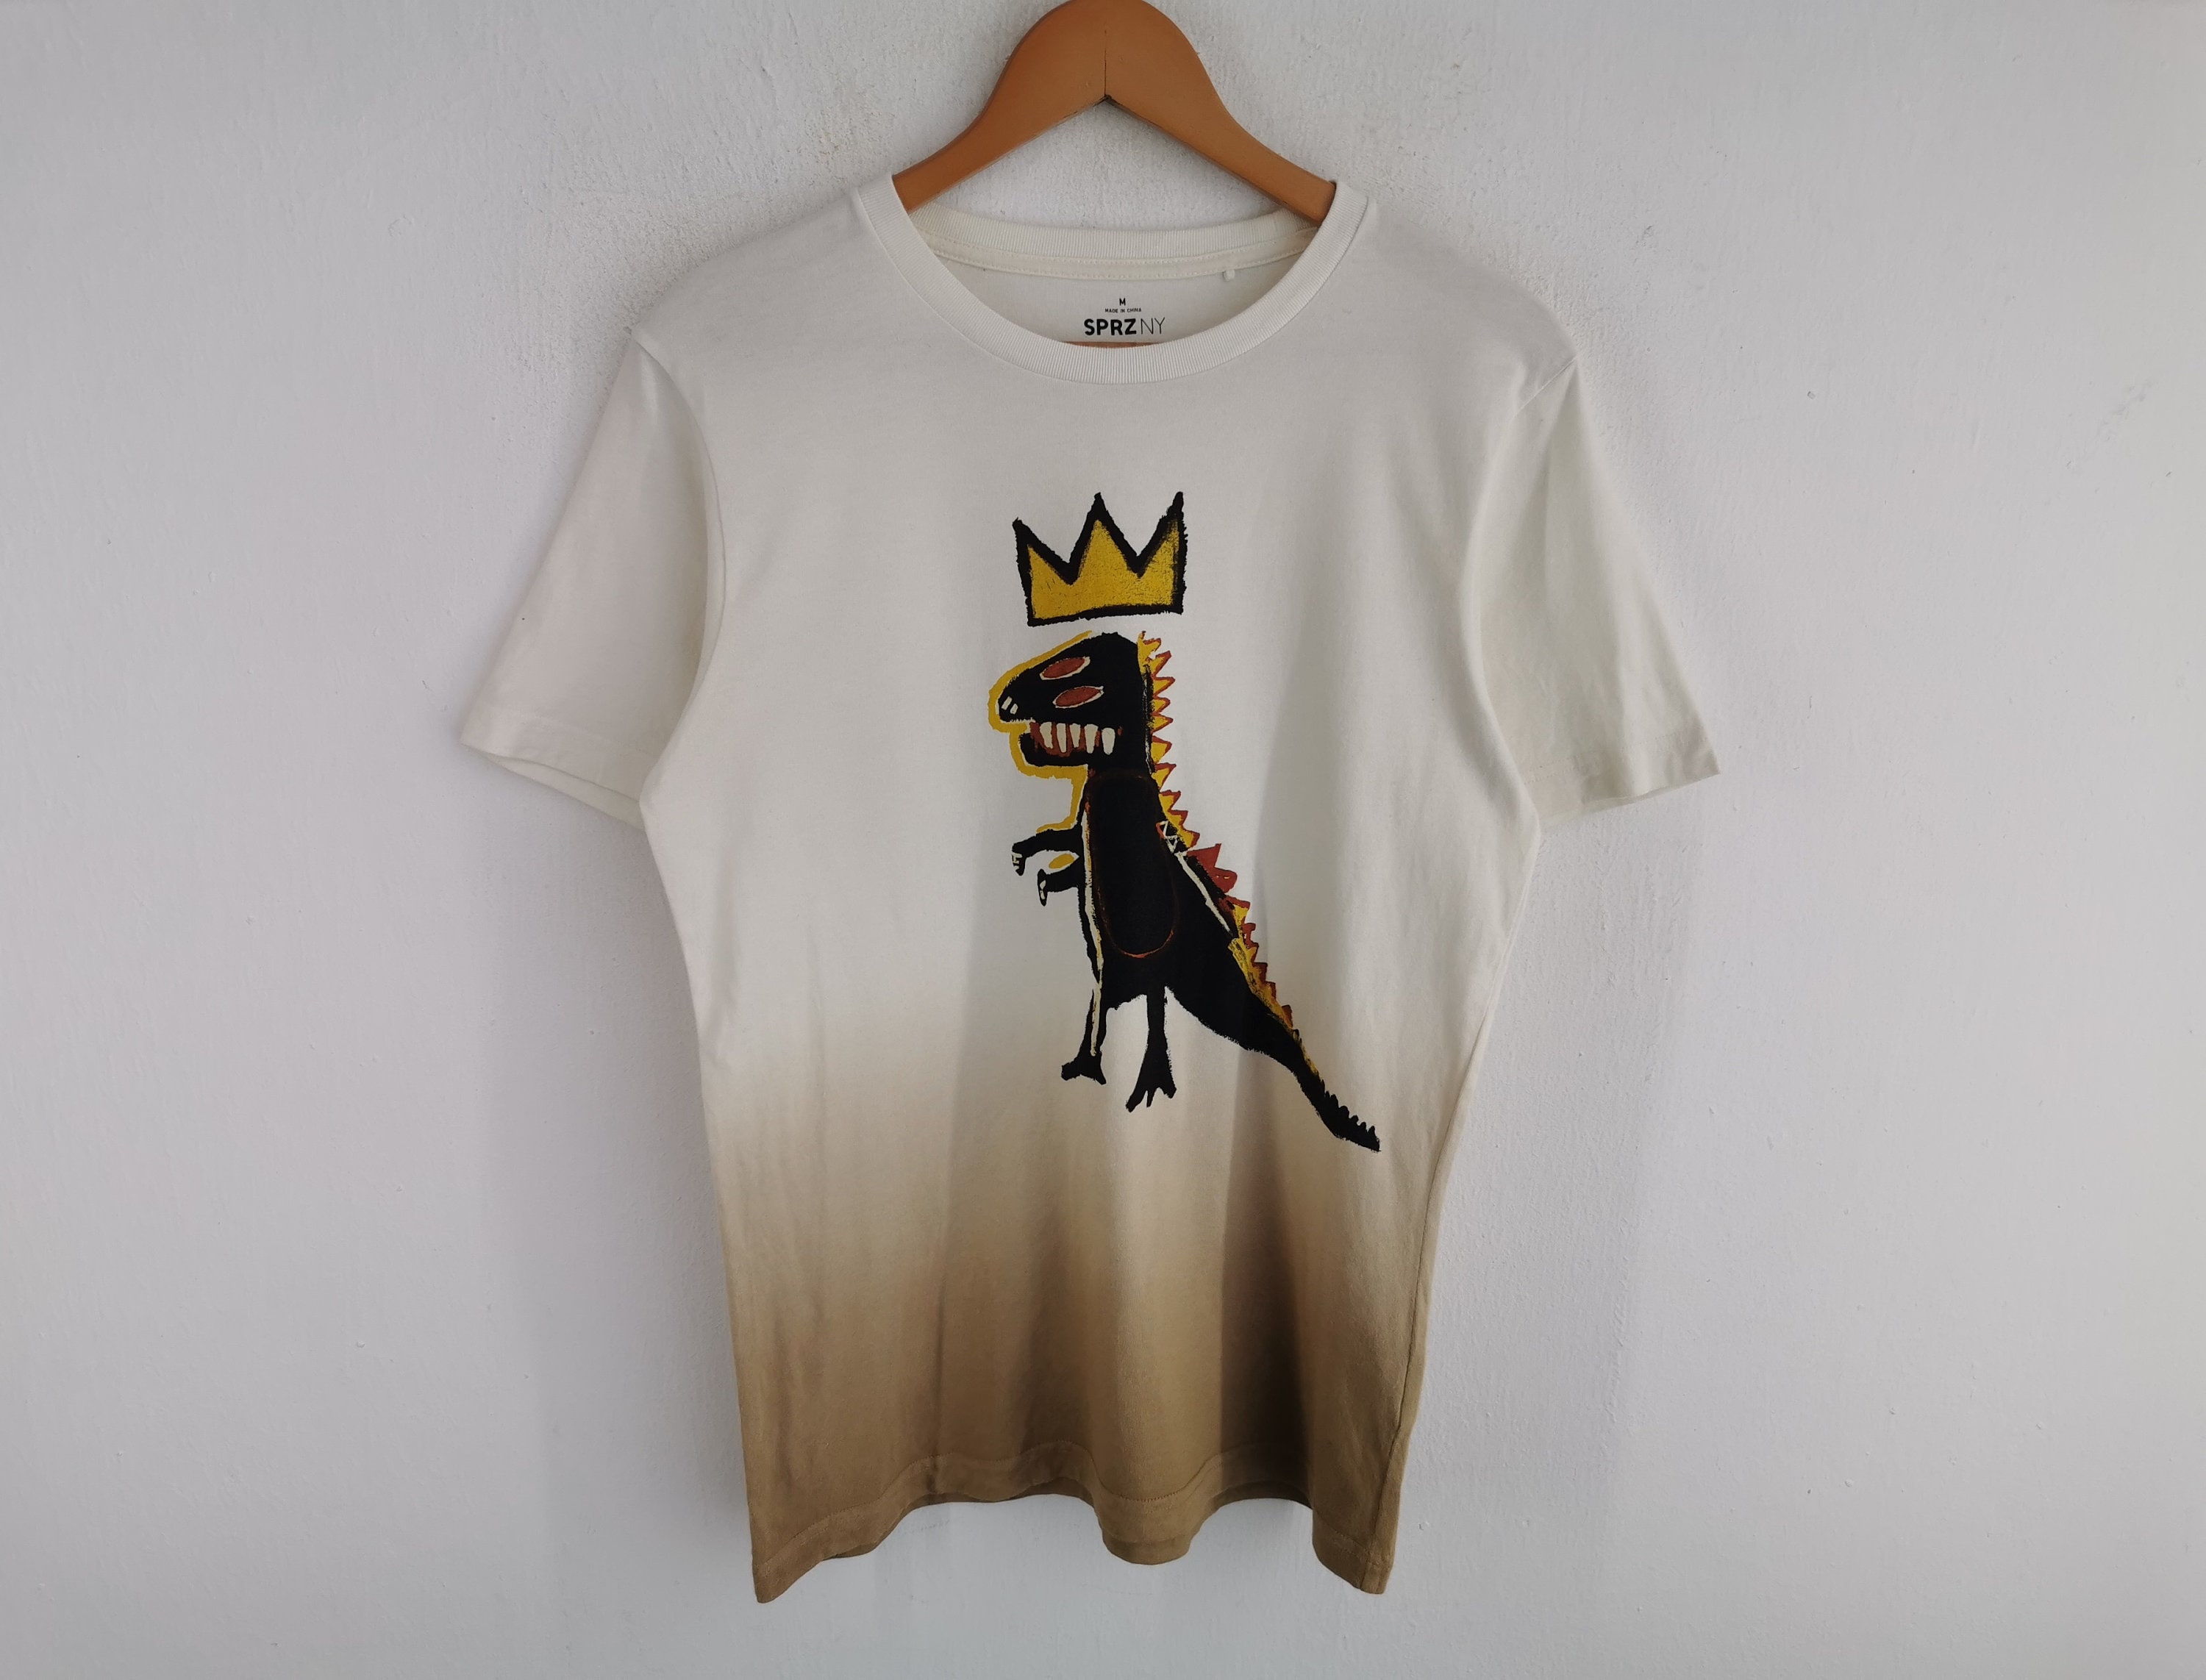 T-shirt Jean Michel Basquiat White size M International in Cotton - 24904949